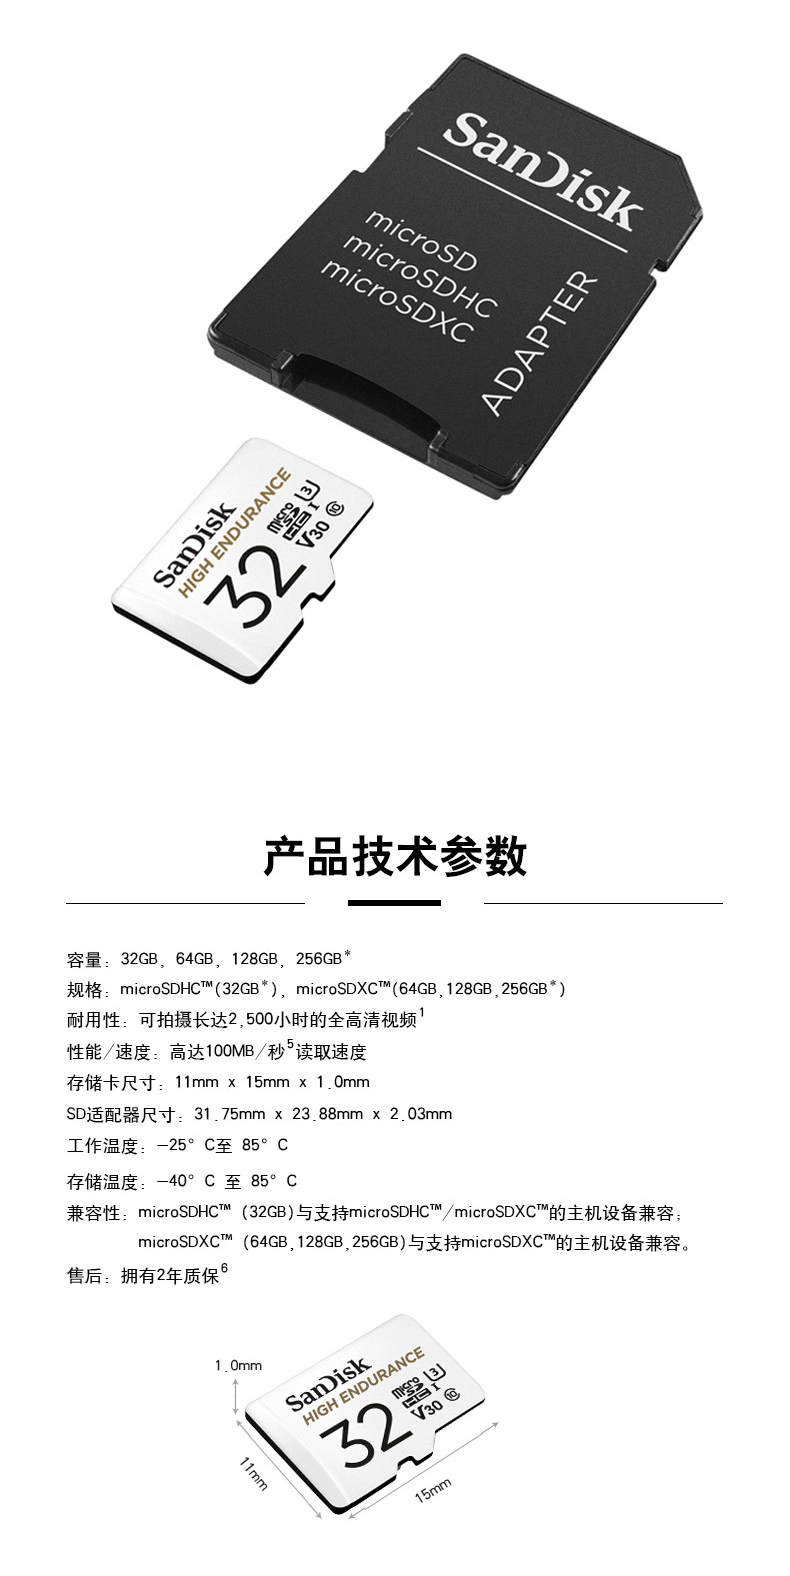 Sandisk SanDisk 정품 메모리 32g 카드 운전 레코더 특수 카드 모니터링 메모리 카드 tf 카드 고속 메모리 카드 마이크로 자동차 sd 카드 메모리 카드